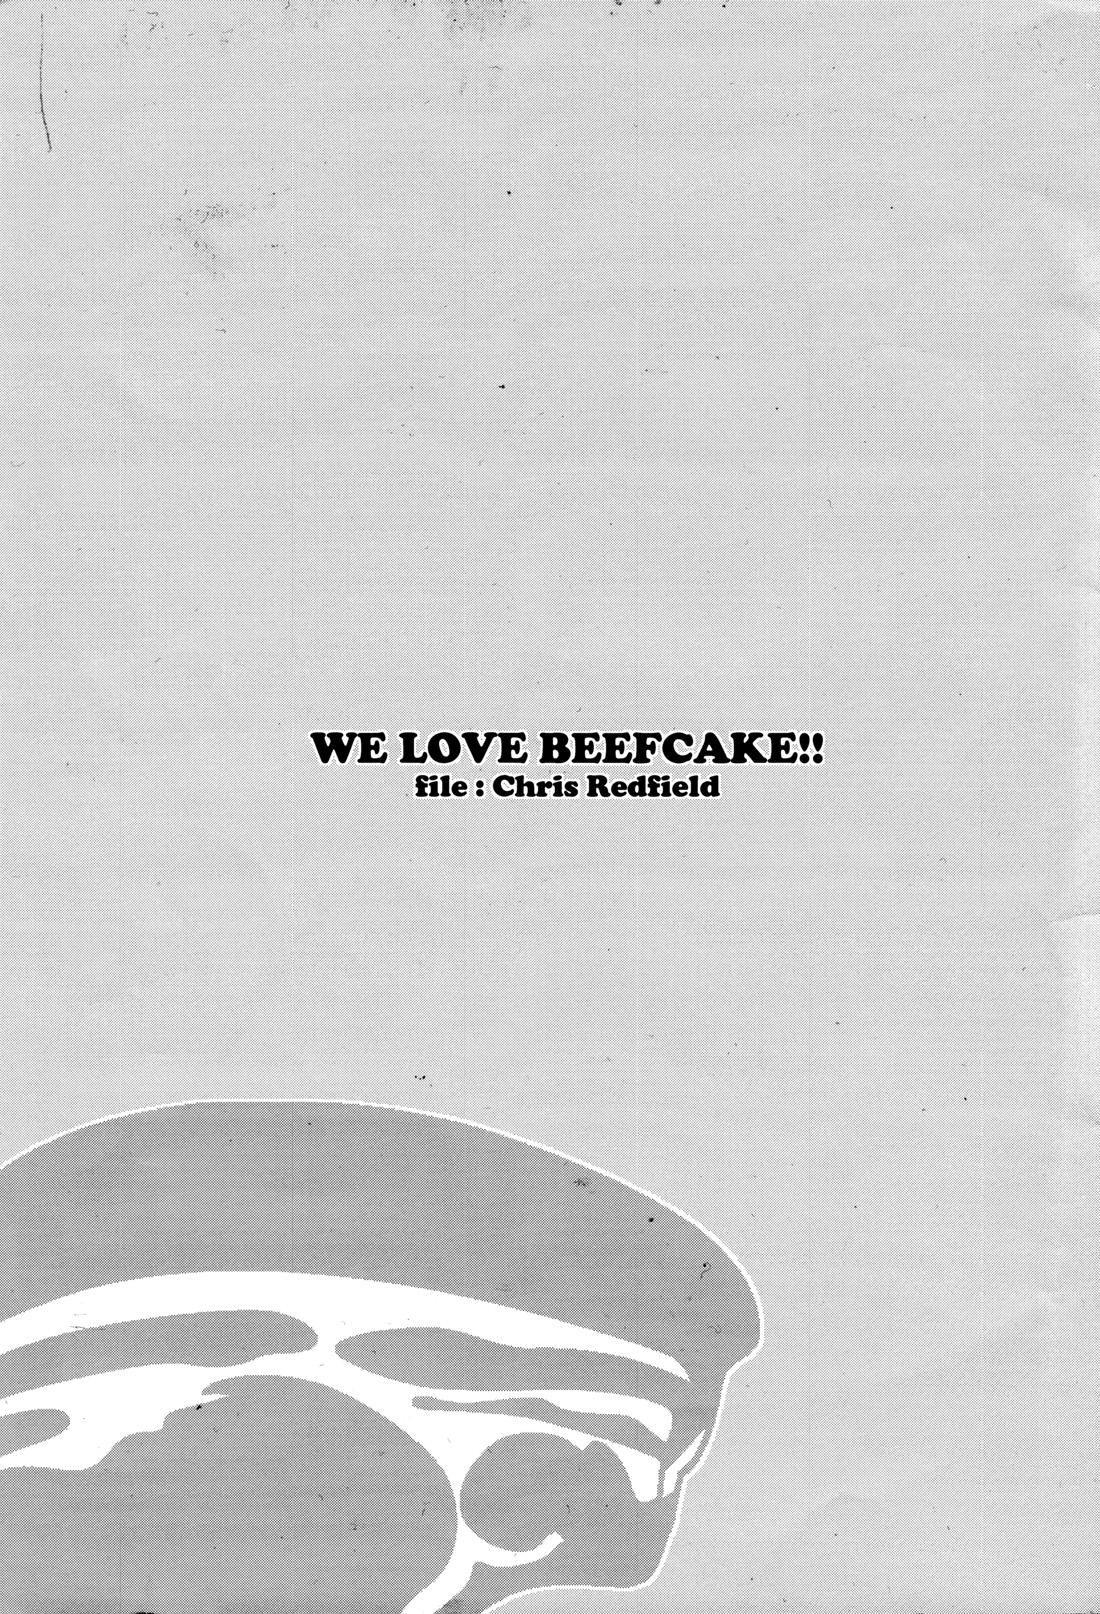 WE LOVE BEEFCAKE!! file:CHRIS REDFIELD 1